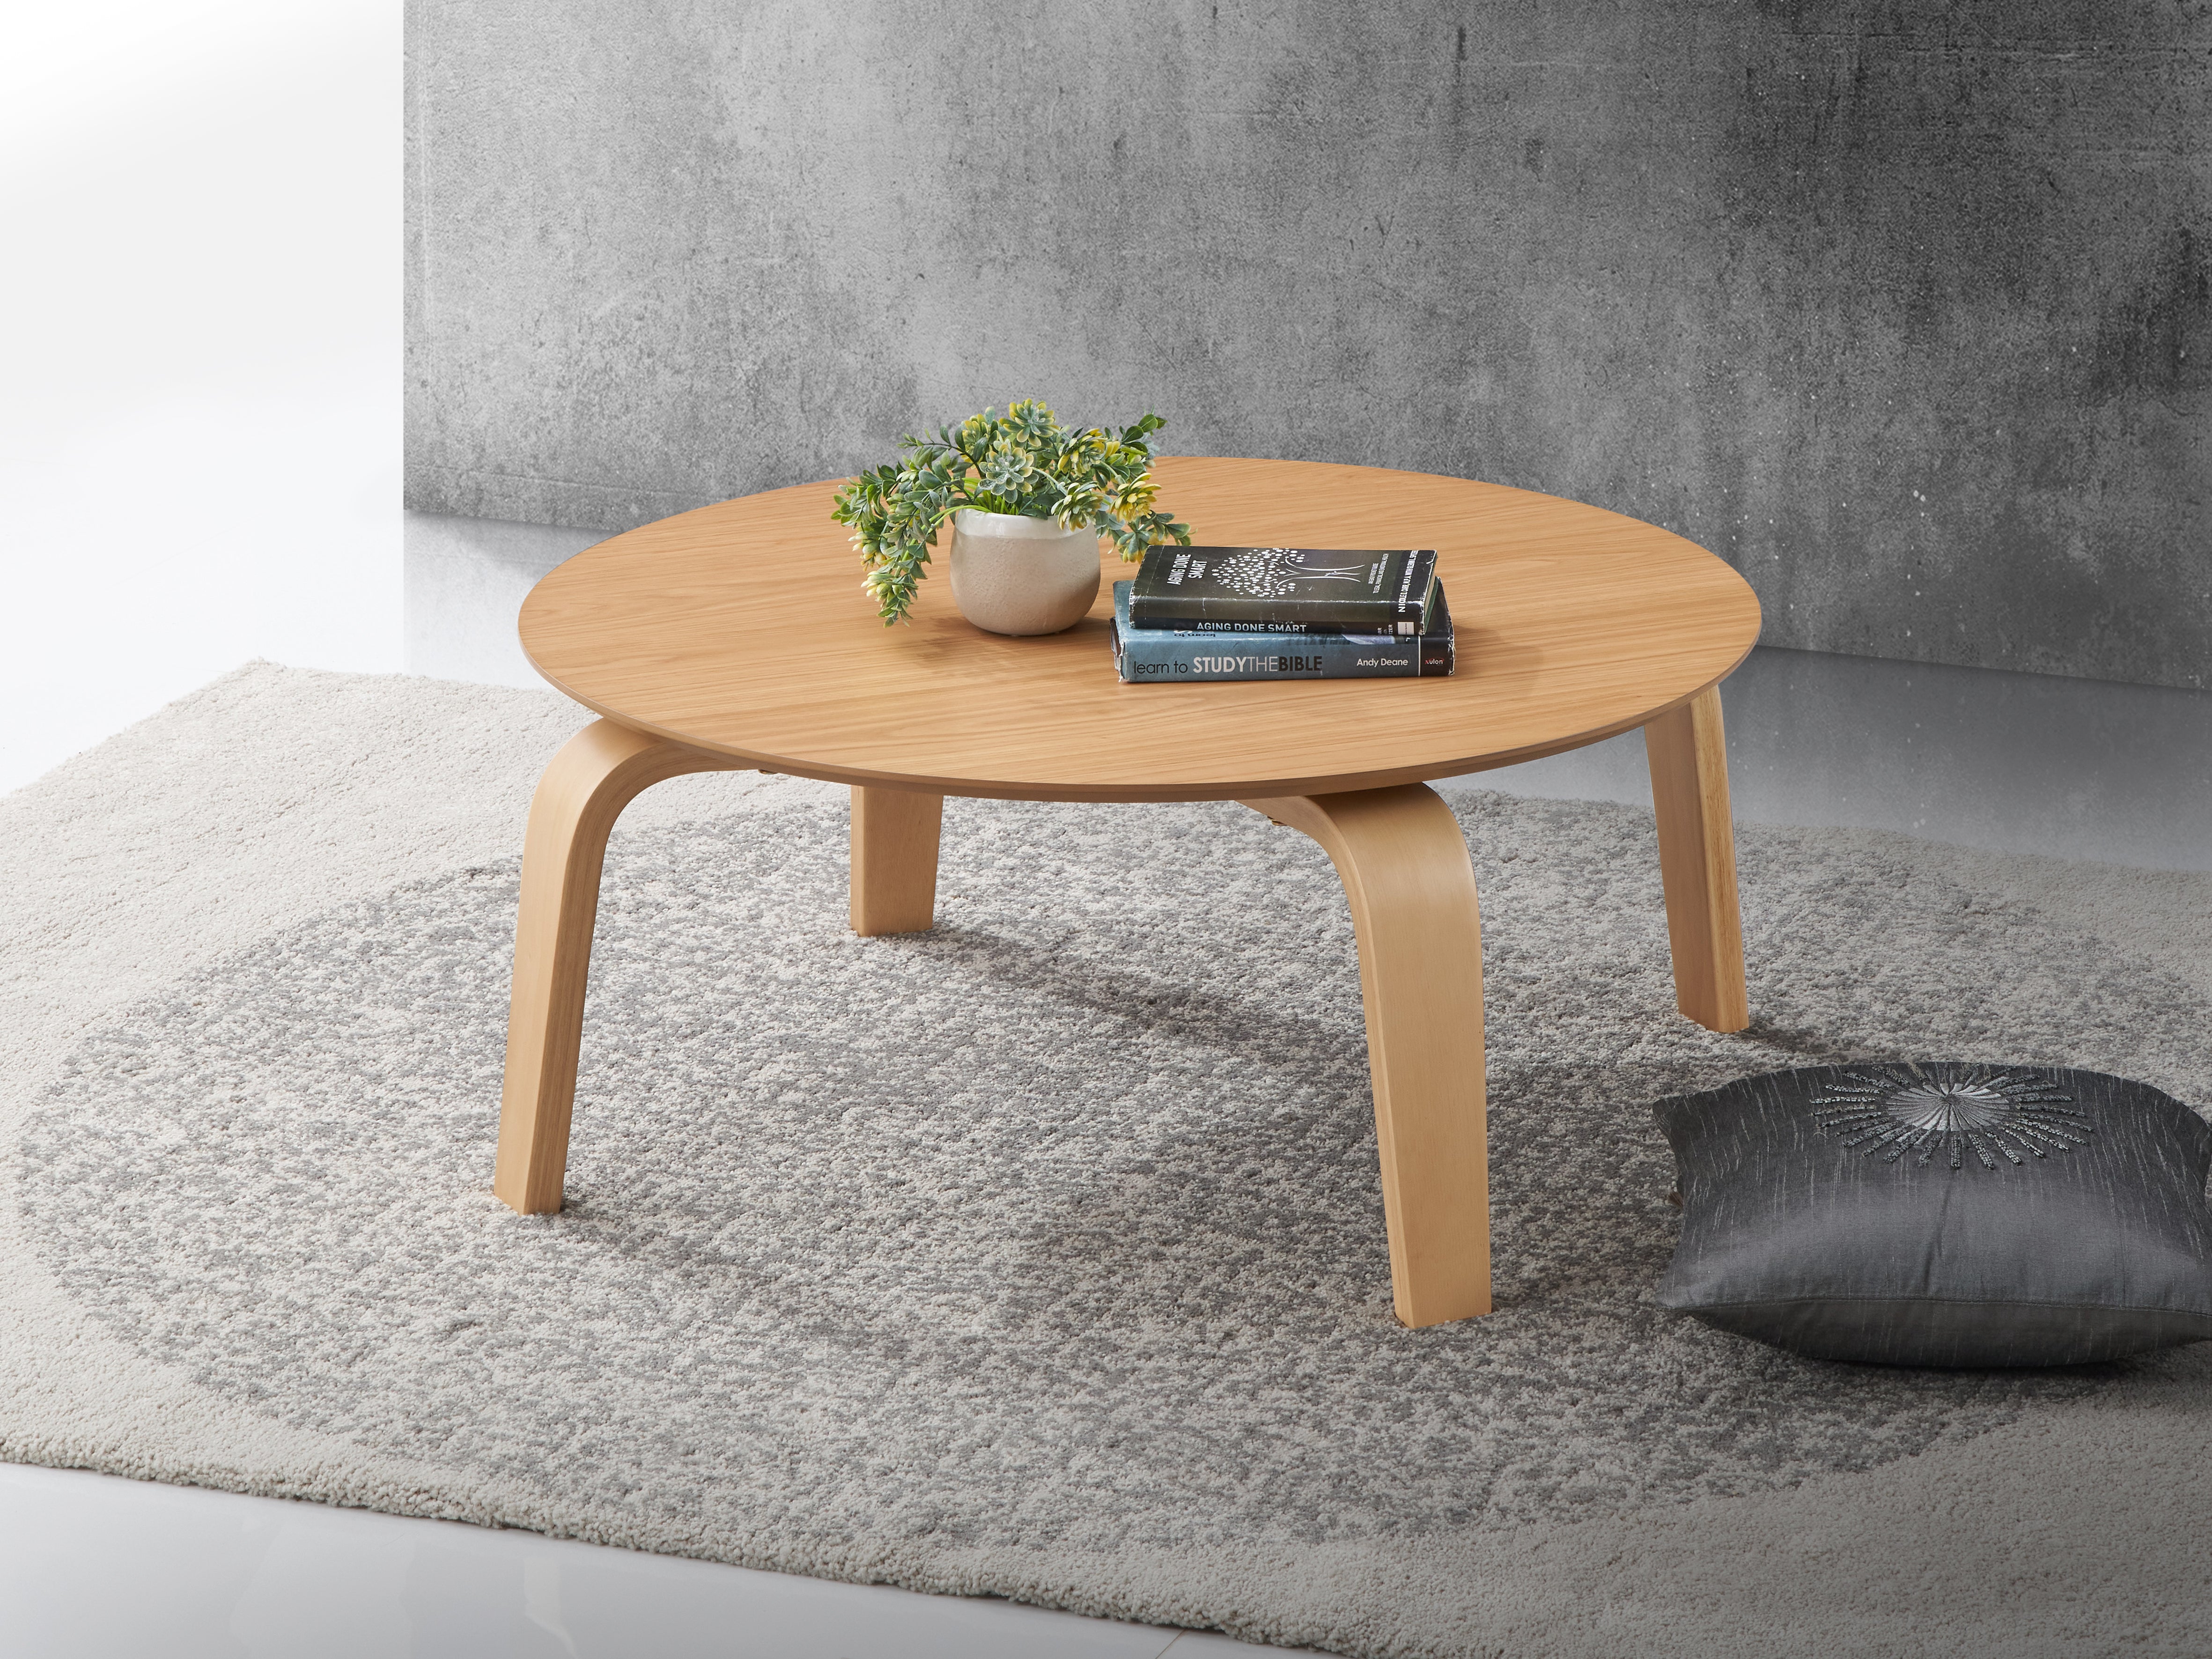 Mod Round Shape Mid-Century Wood Coffee Table - Oak